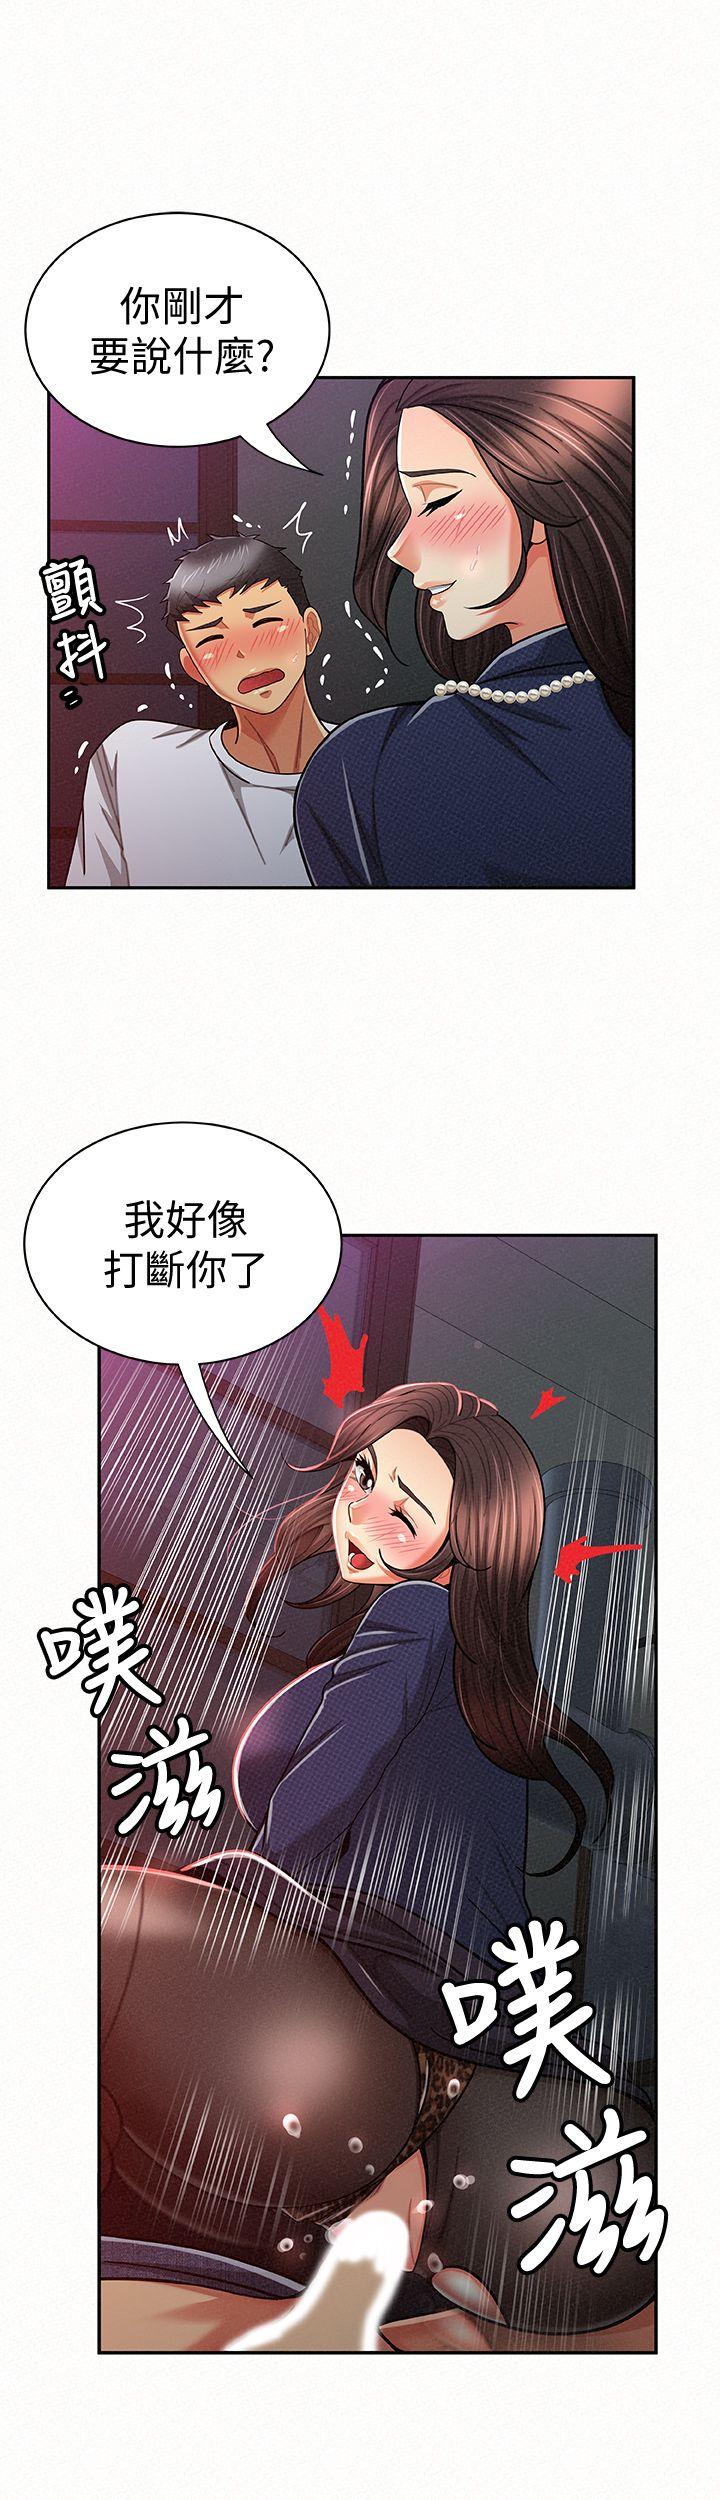 韩国污漫画 報告夫人 第20话-你跟仁惠进展到哪里了? 8